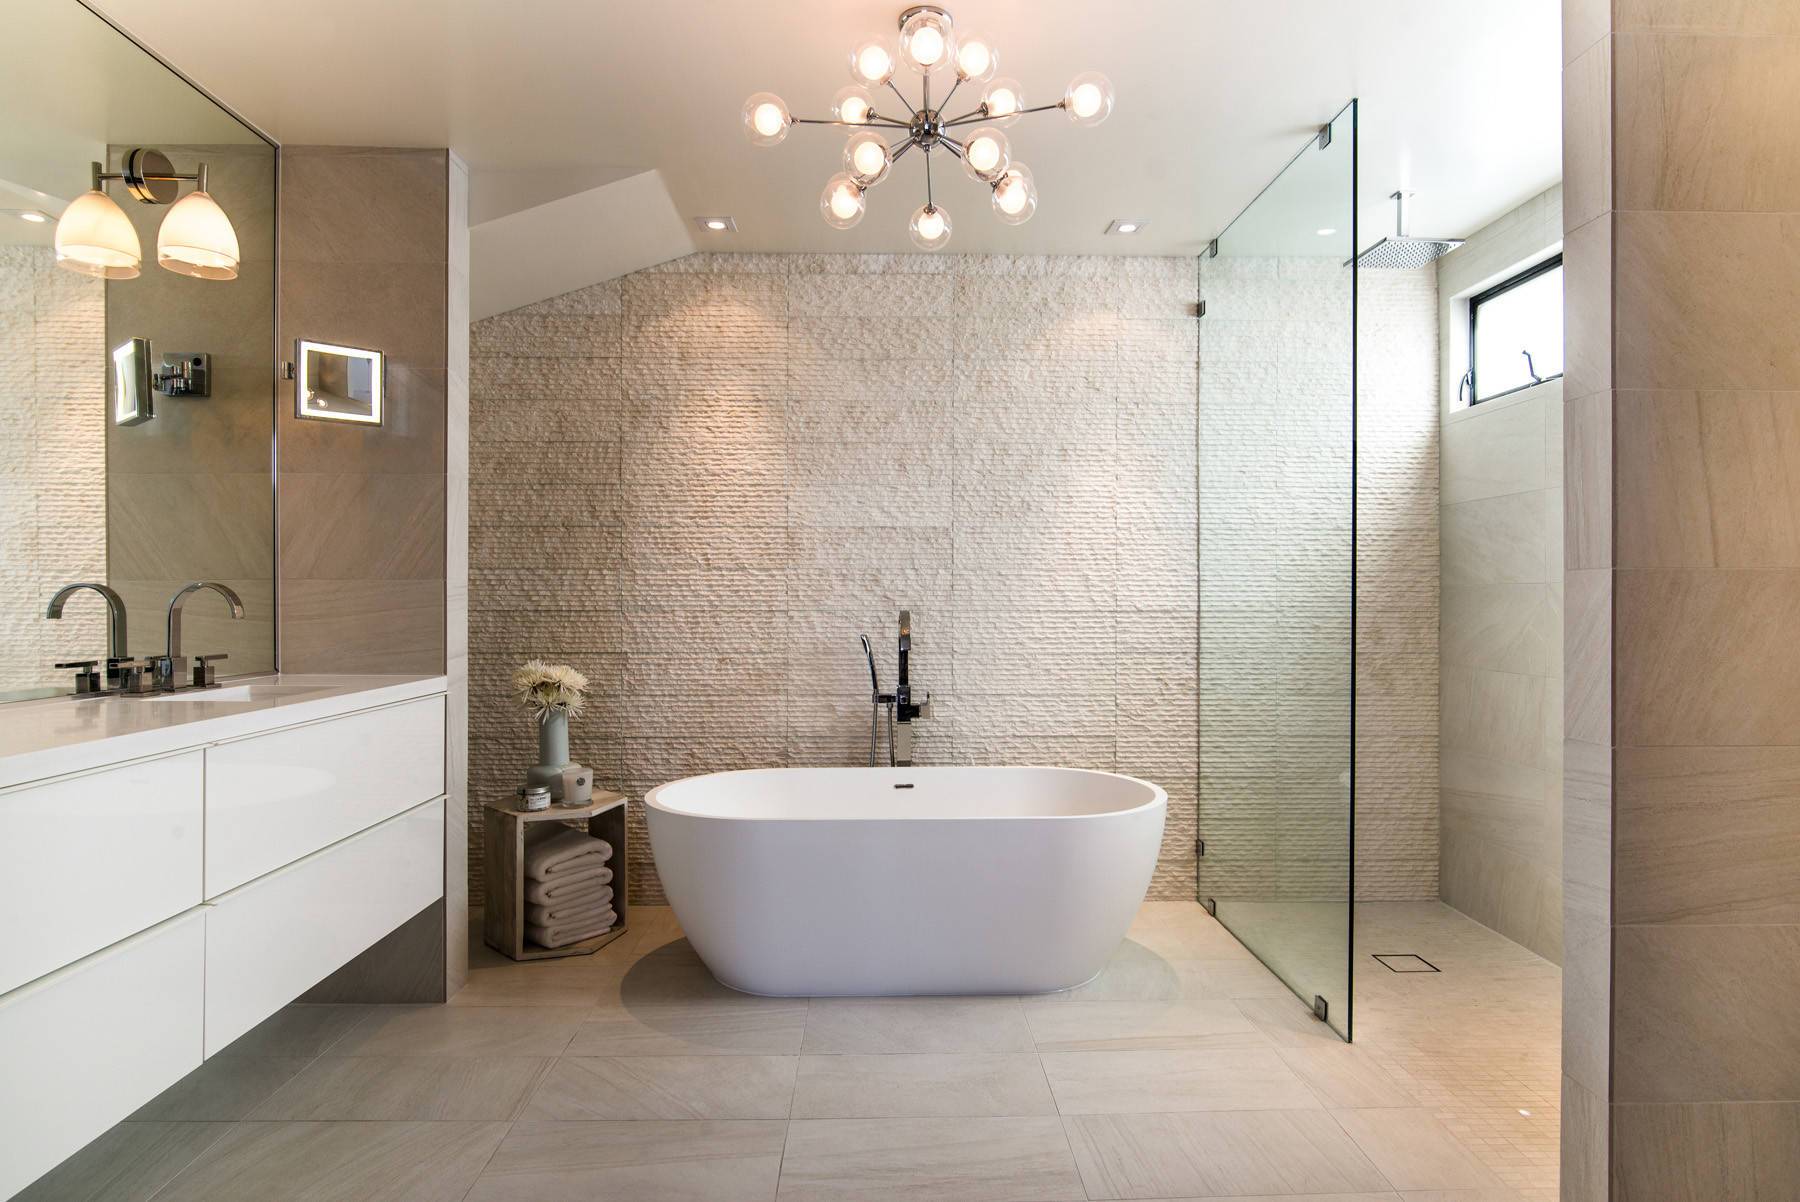 adm-bathroom-ellipse-freestanding-bathtub-glossy-white-63-sw-110-63-x-32-adm-bathroom-design-img_ea9100c706184daf_14-6737-1-0ddbcdf-56616